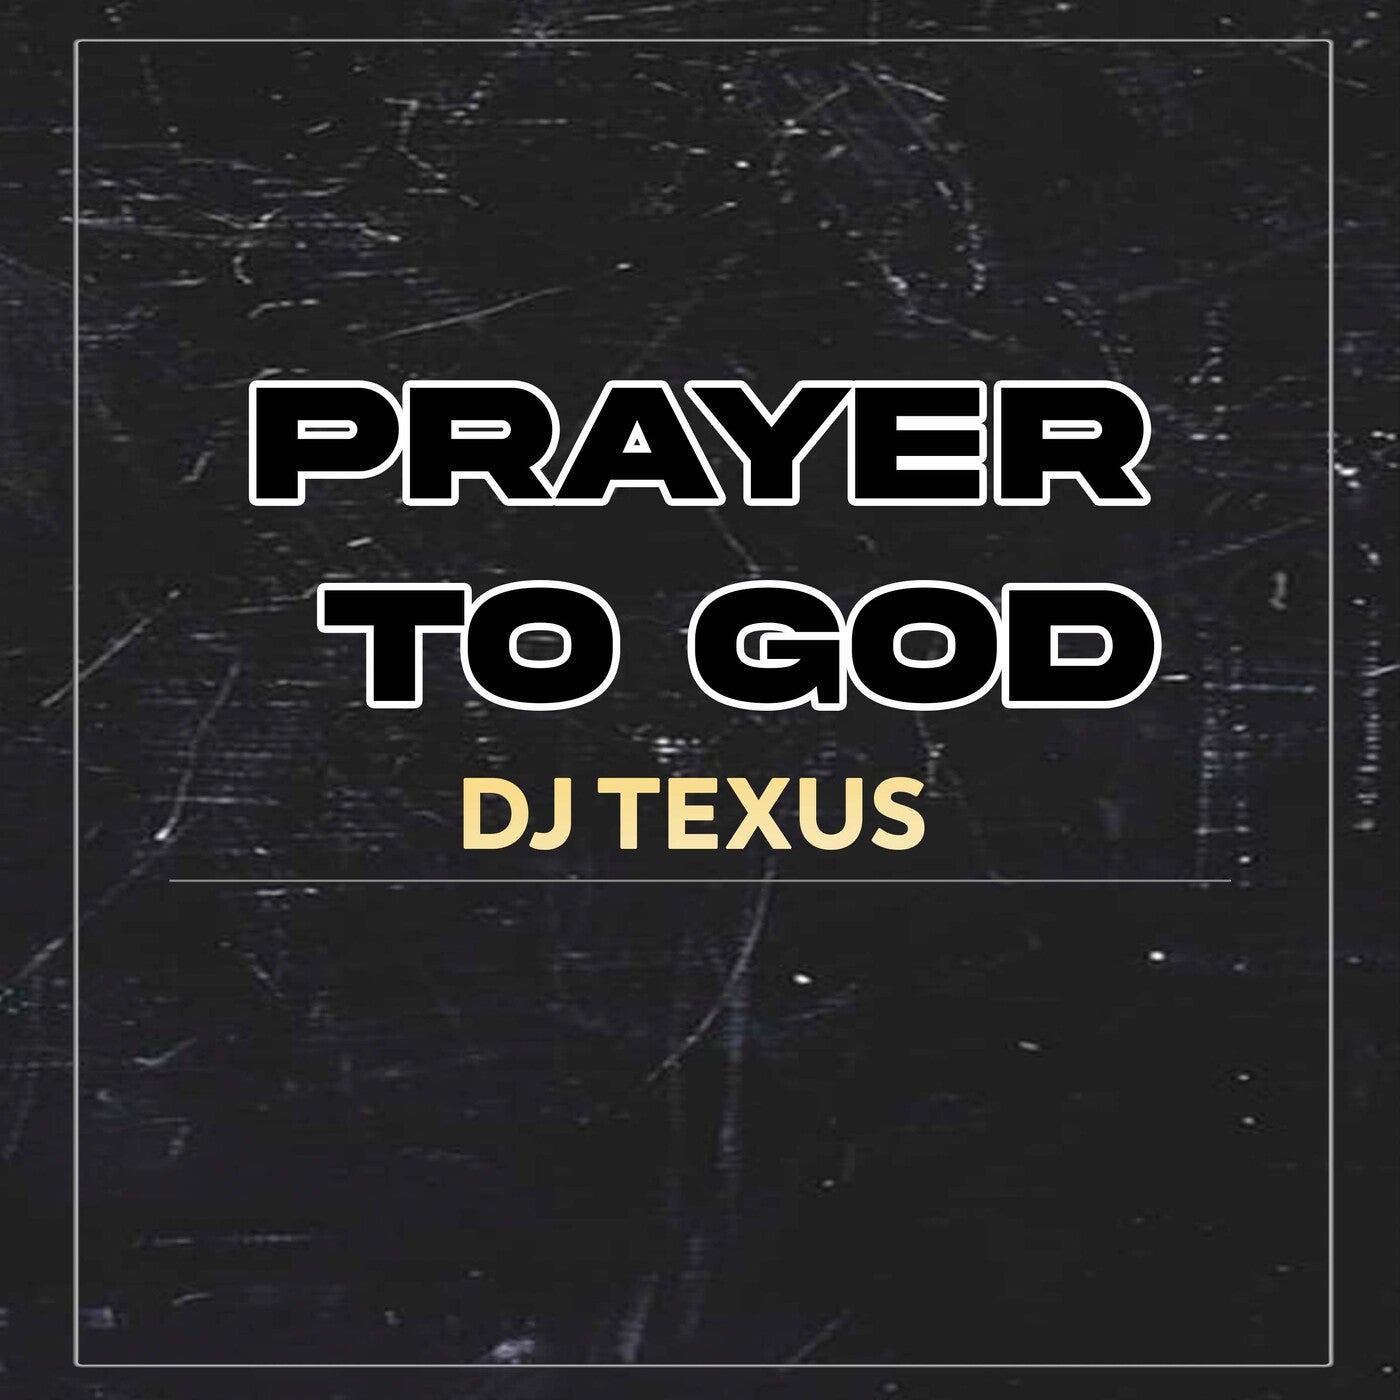 Prayer to God